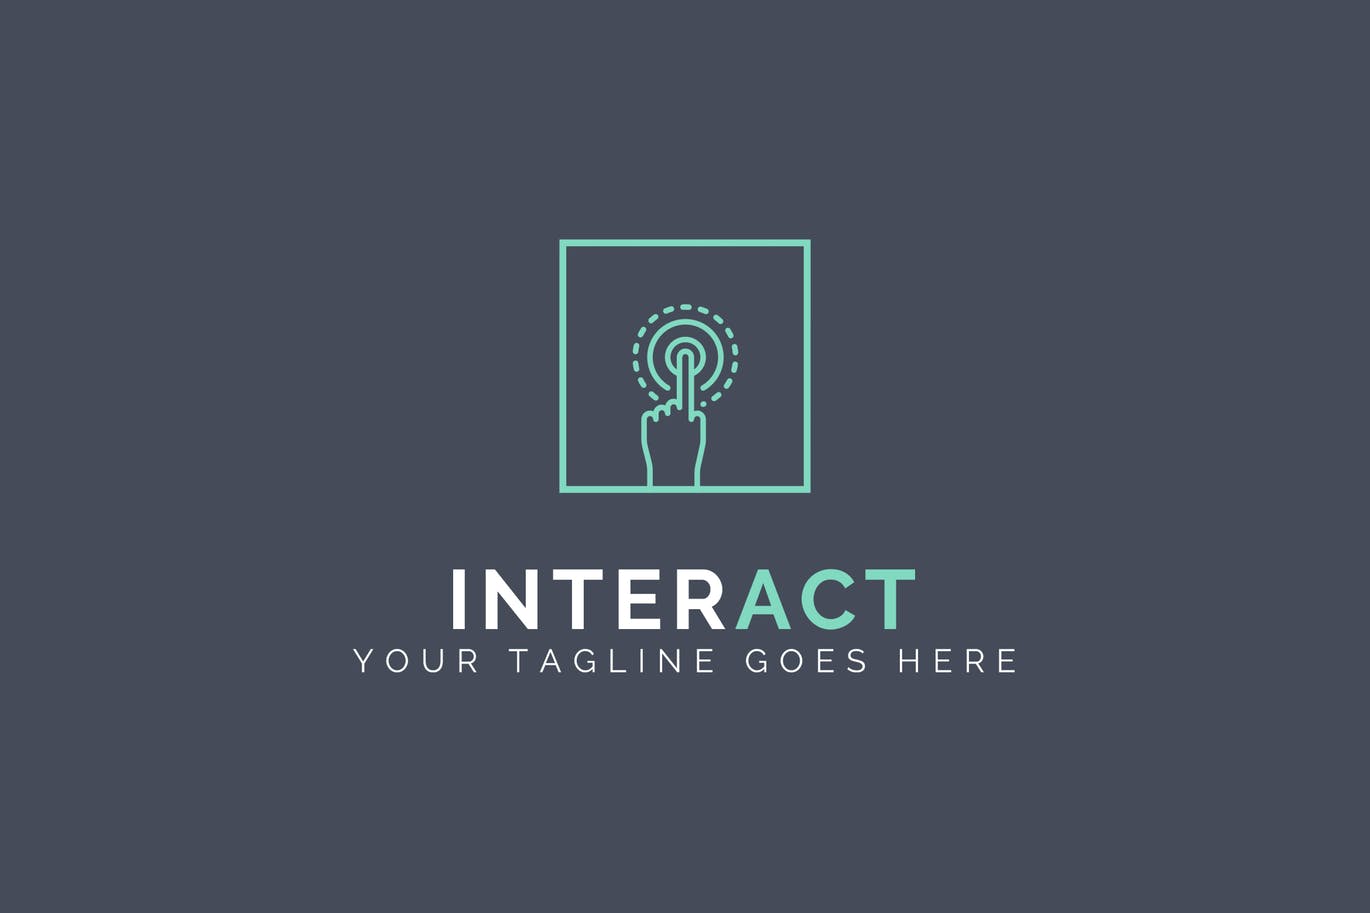 人机交互系统抽象Logo设计第一素材精选模板 Interact – Abstract Logo Template插图